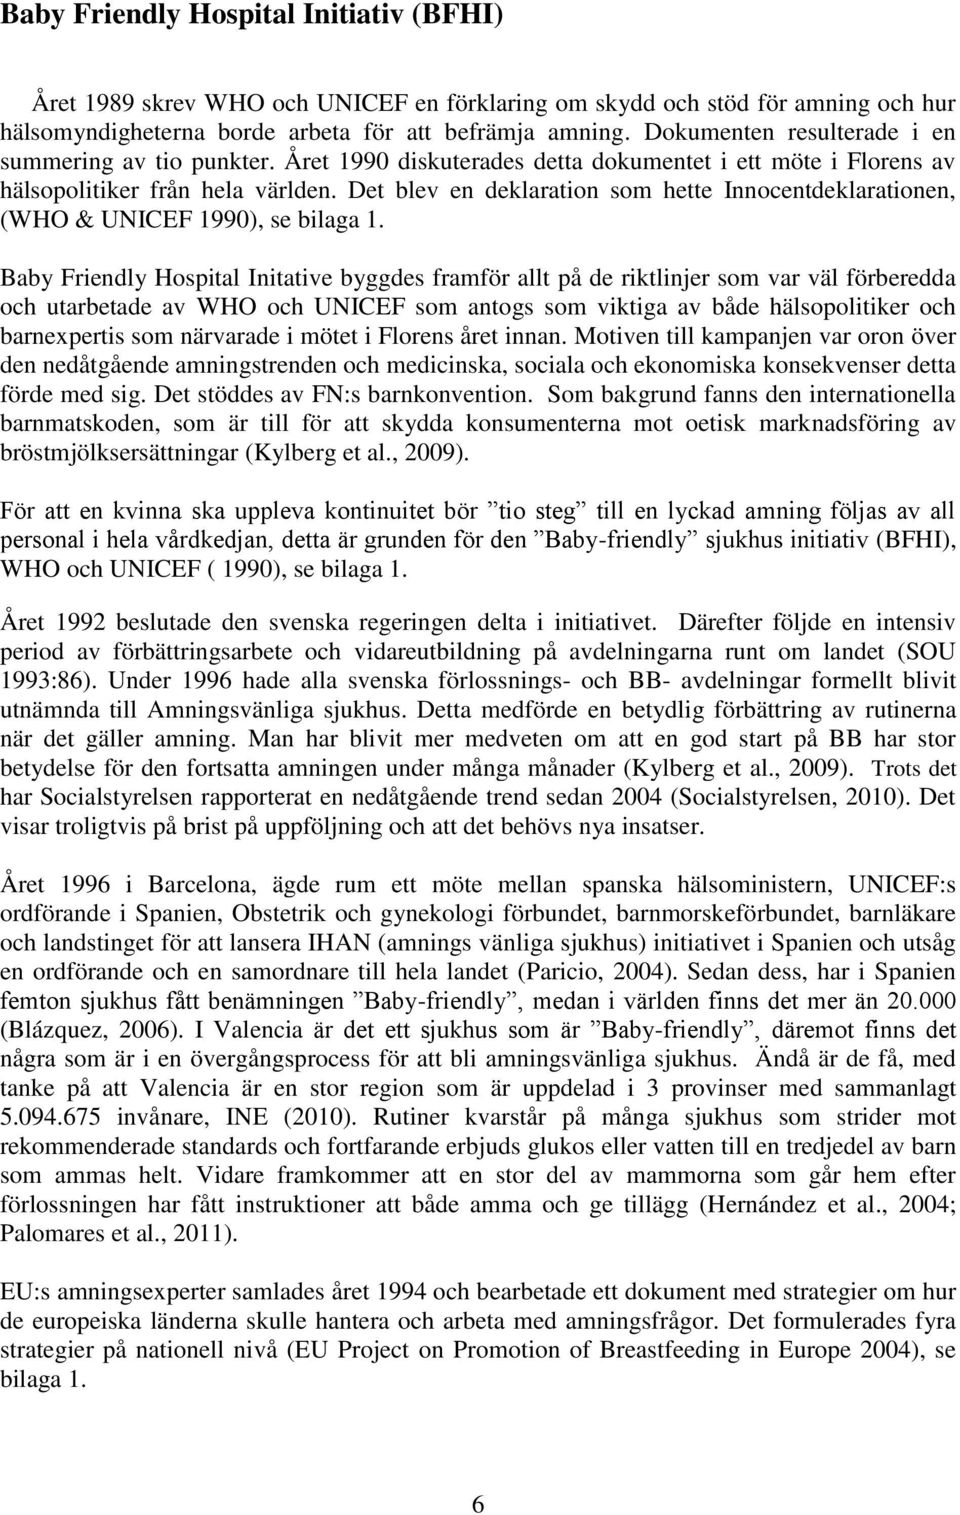 Det blev en deklaration som hette Innocentdeklarationen, (WHO & UNICEF 1990), se bilaga 1.